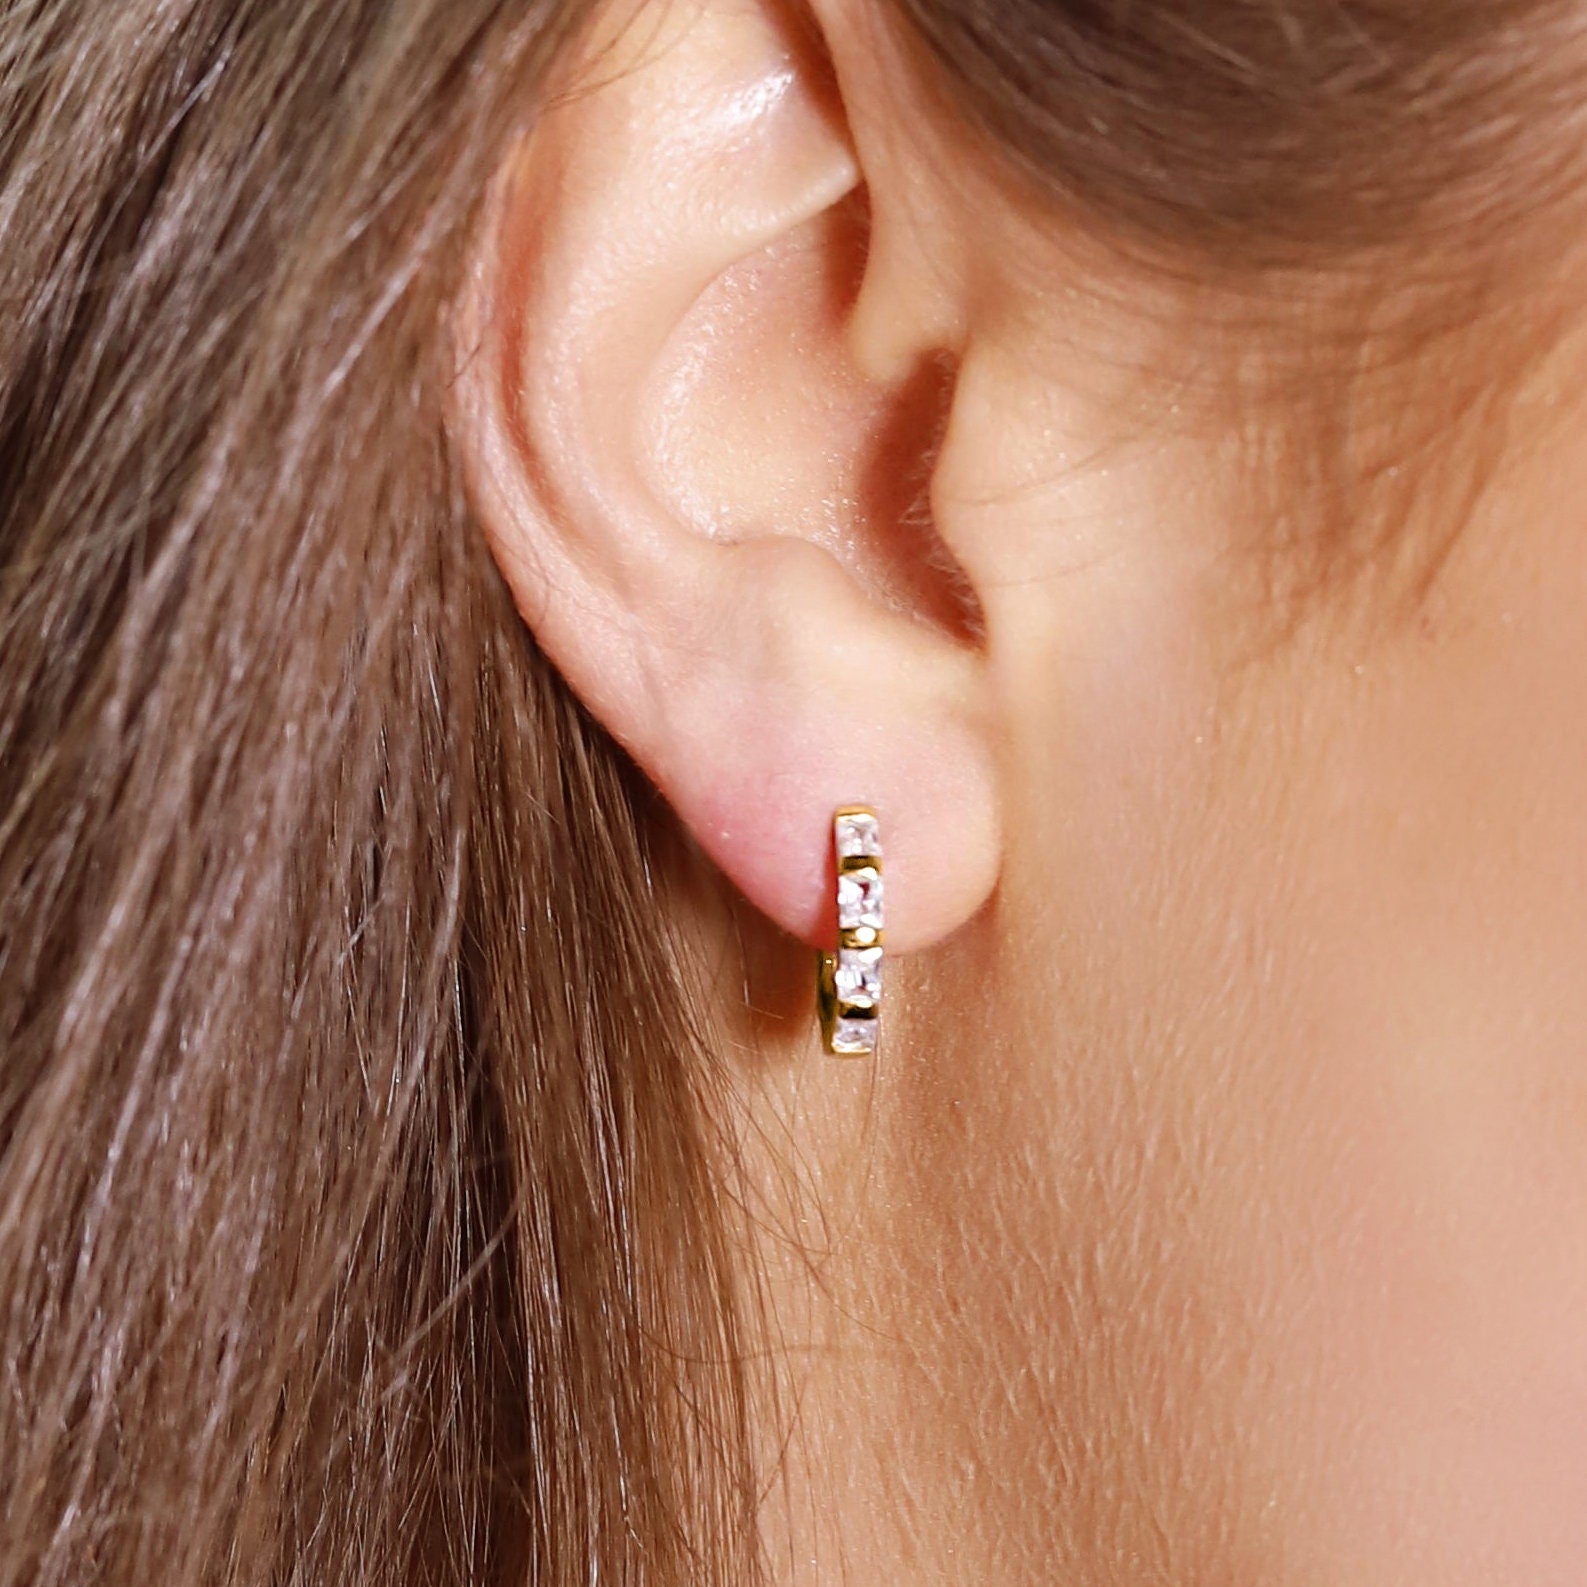 Small huggie hoop earrings. Gold huggie hoop earrings. Minimalist sterling silver hoop earrings. Baguette Huggie Hoops with Cubic Zirconia.